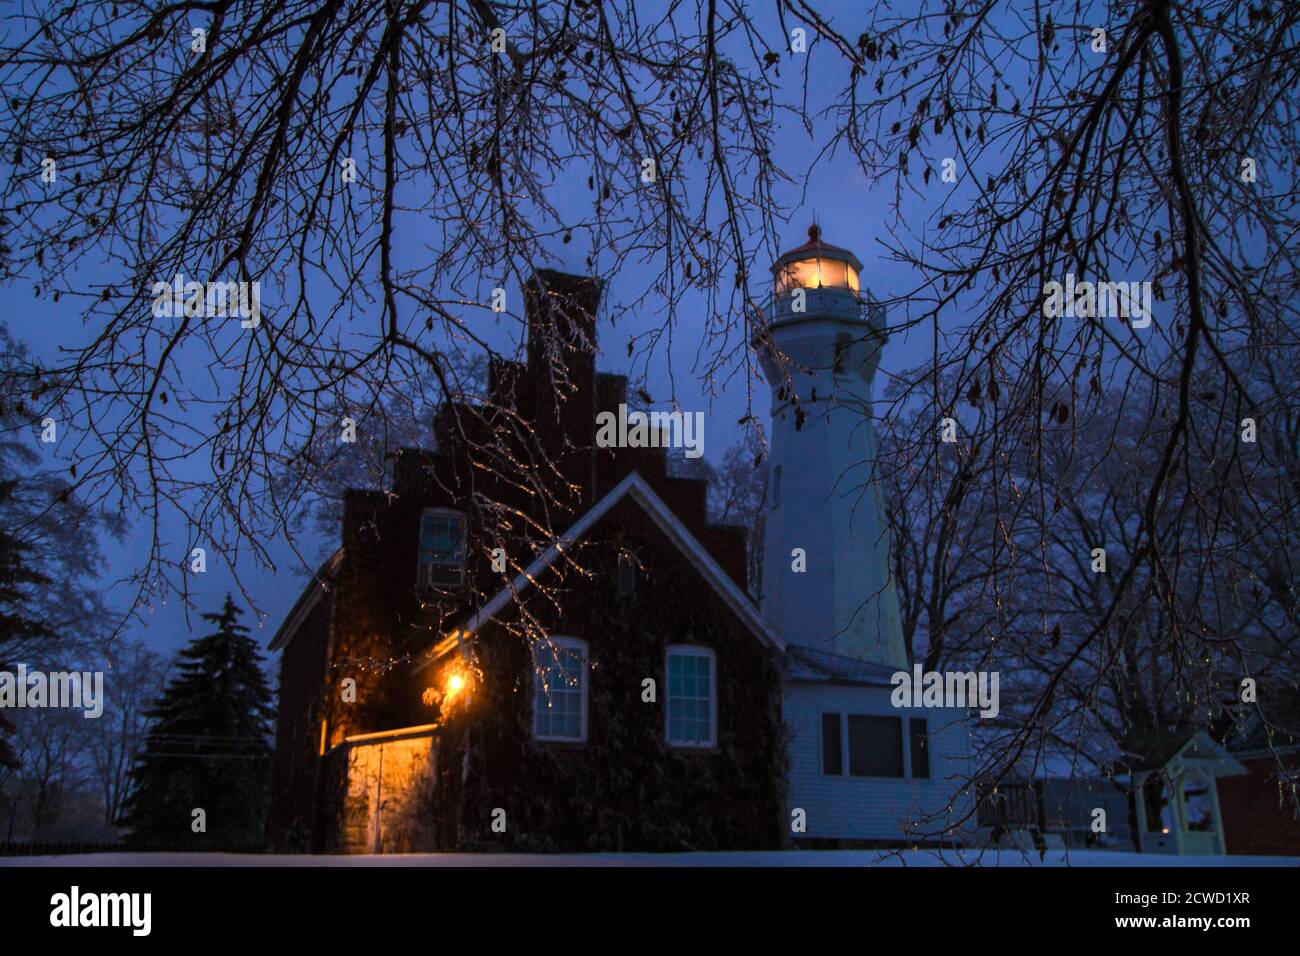 Port Sanilac, Michigan, États-Unis - 12 décembre 2013 : balise lumineuse du phare de Port Sanilac entourée de glaces lors d'une froide nuit d'hiver. Banque D'Images